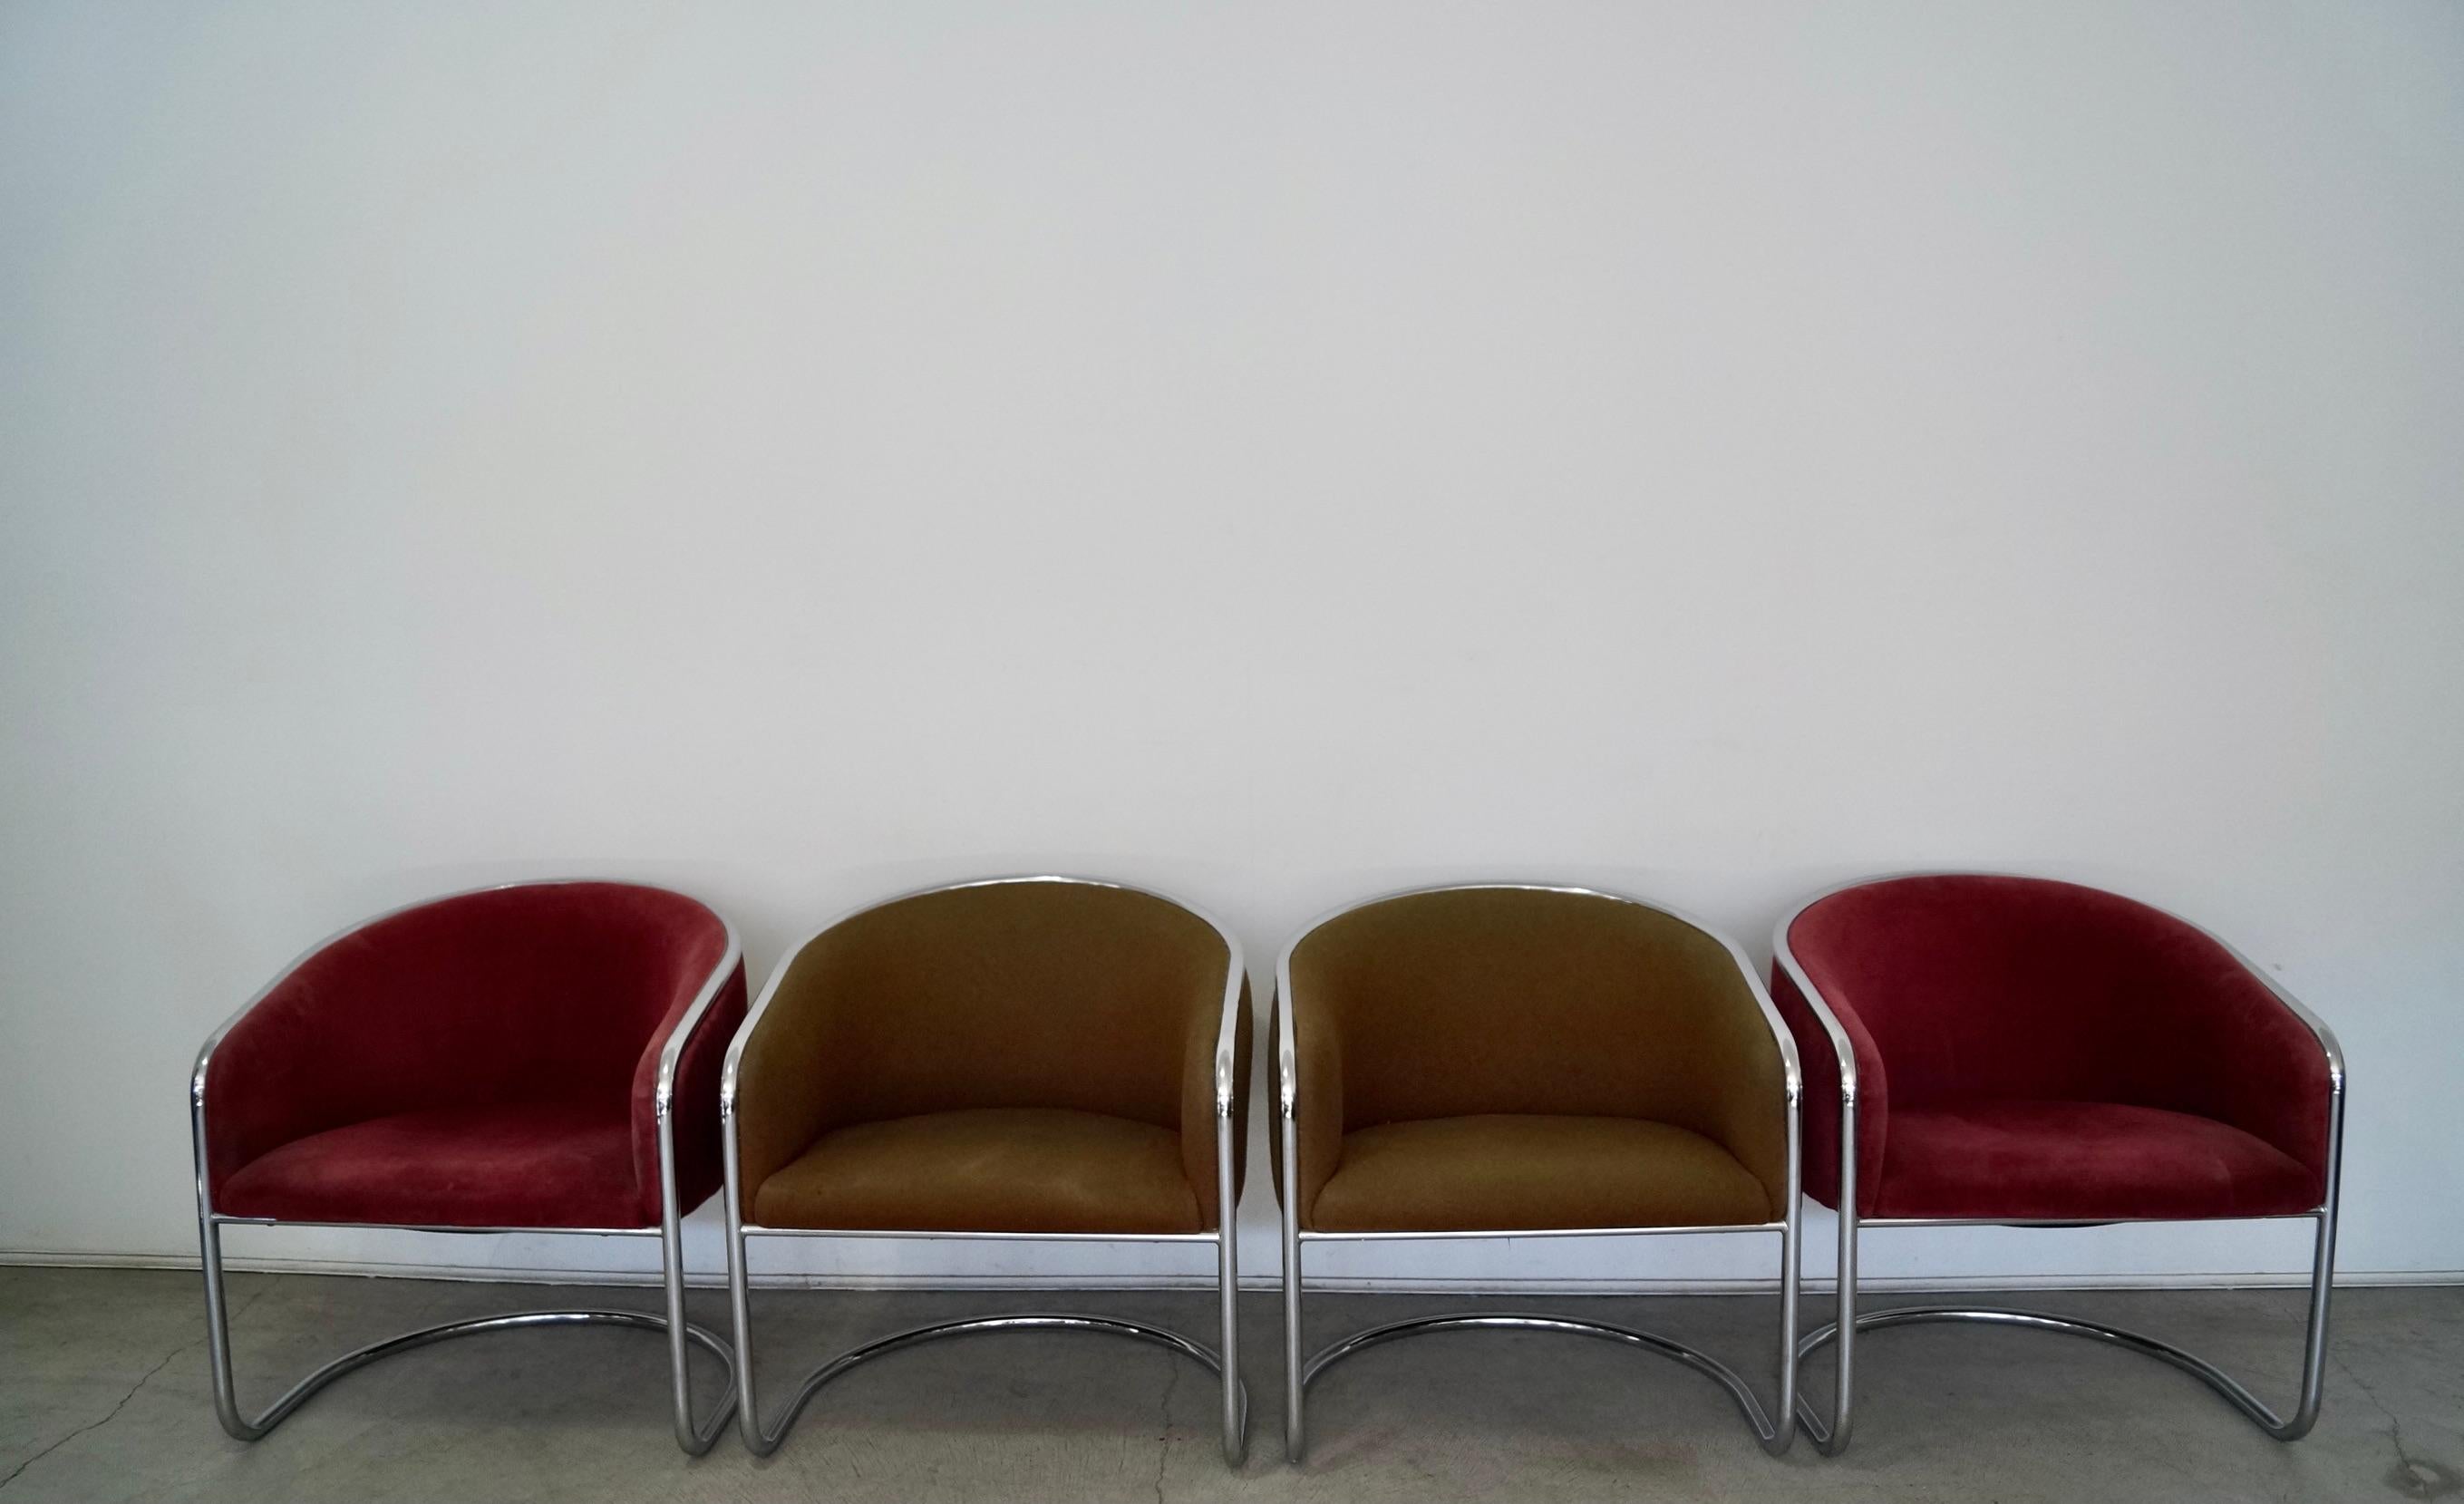 Vintage Mid-century Modern Lounge Chairs zu verkaufen. Es handelt sich um originale Thonet Stühle, die von Anton Lorenz entworfen wurden, und sie haben die Originalpolsterung. Die Chromrahmen sind poliert und können mit einem neuen, frischen Stoff